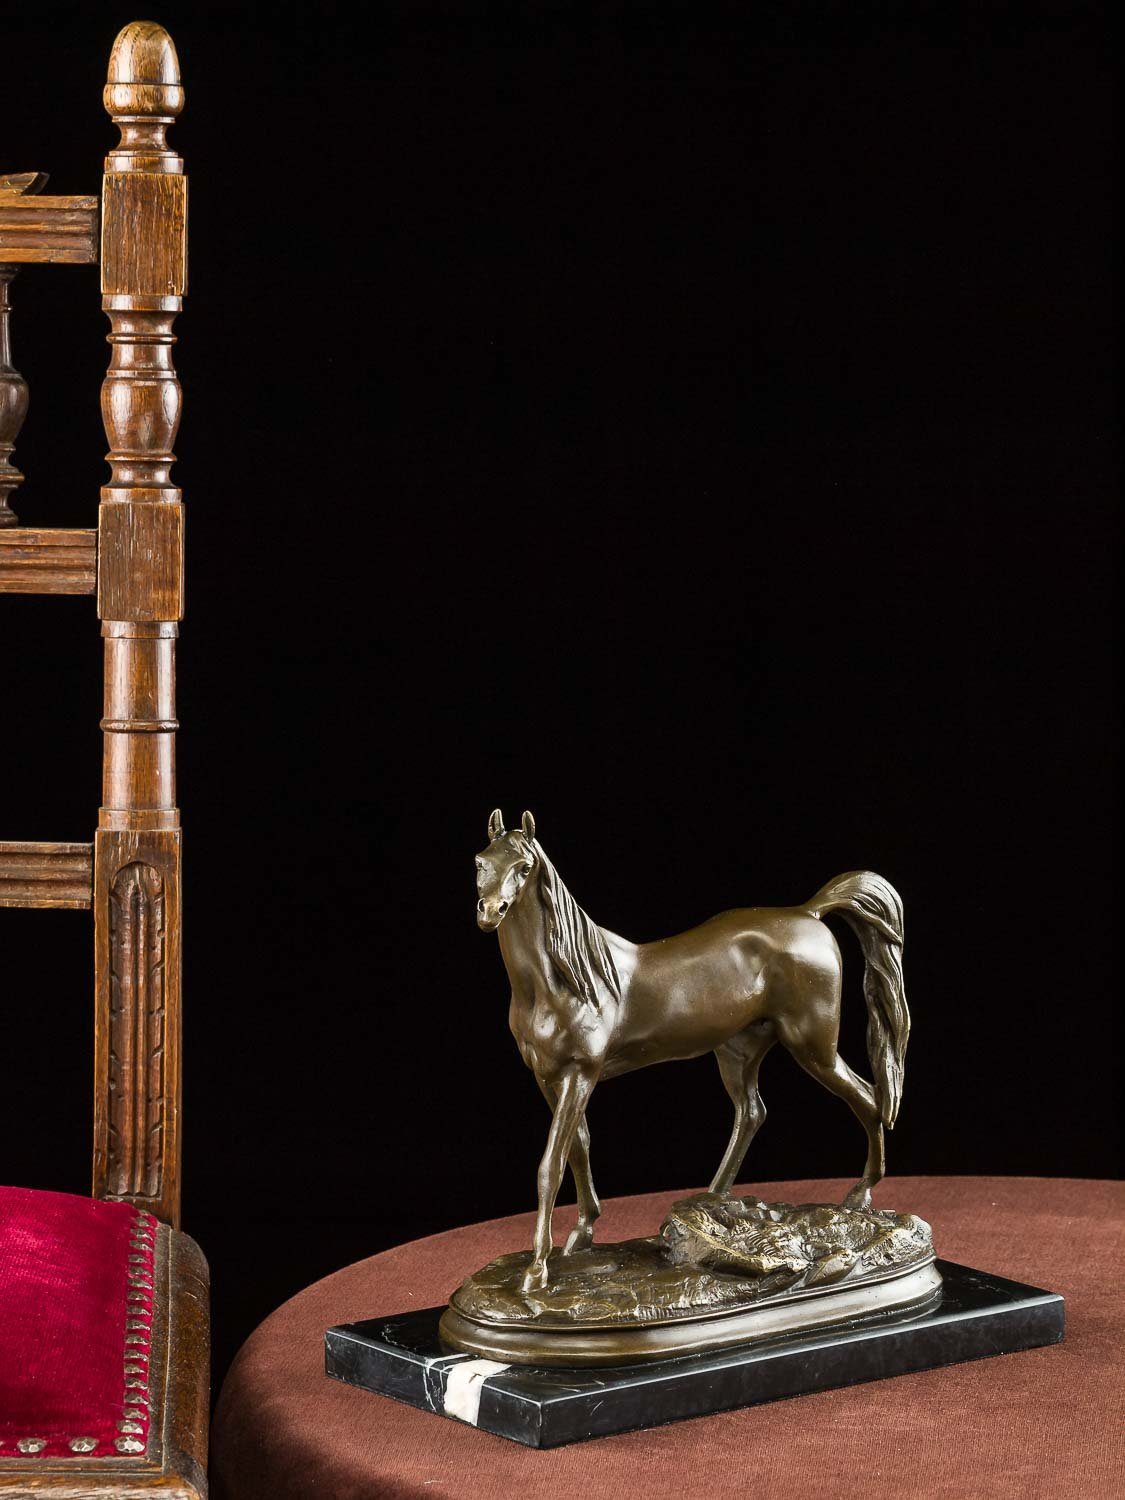 Aubaho Skulptur Antik-Stil Bronze Steinplinthe Bronzestatue Pferd Bronzeskulptur auf 